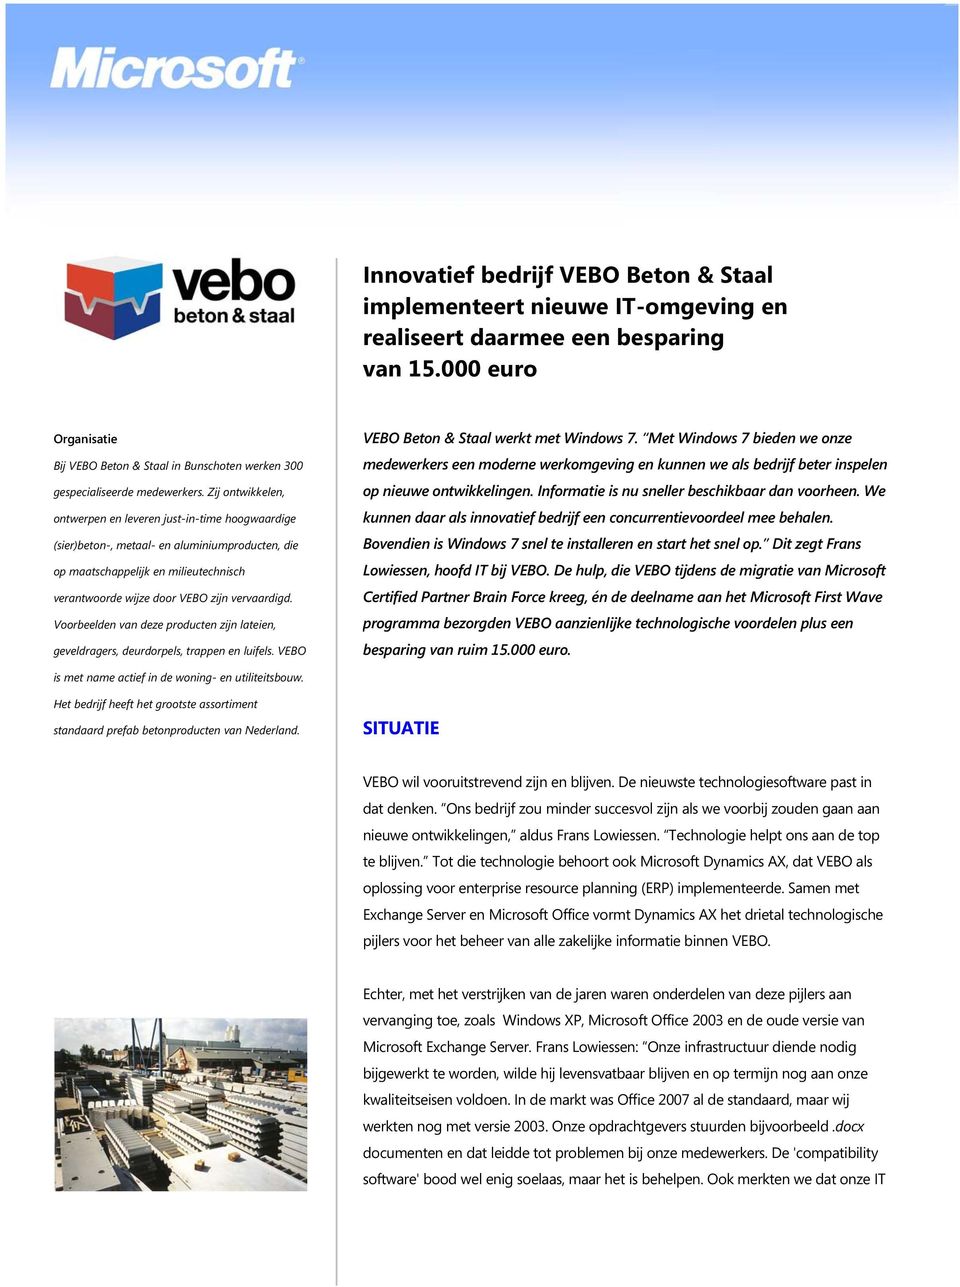 Zij ontwikkelen, ontwerpen en leveren just-in-time hoogwaardige (sier)beton-, metaal- en aluminiumproducten, die op maatschappelijk en milieutechnisch verantwoorde wijze door VEBO zijn vervaardigd.